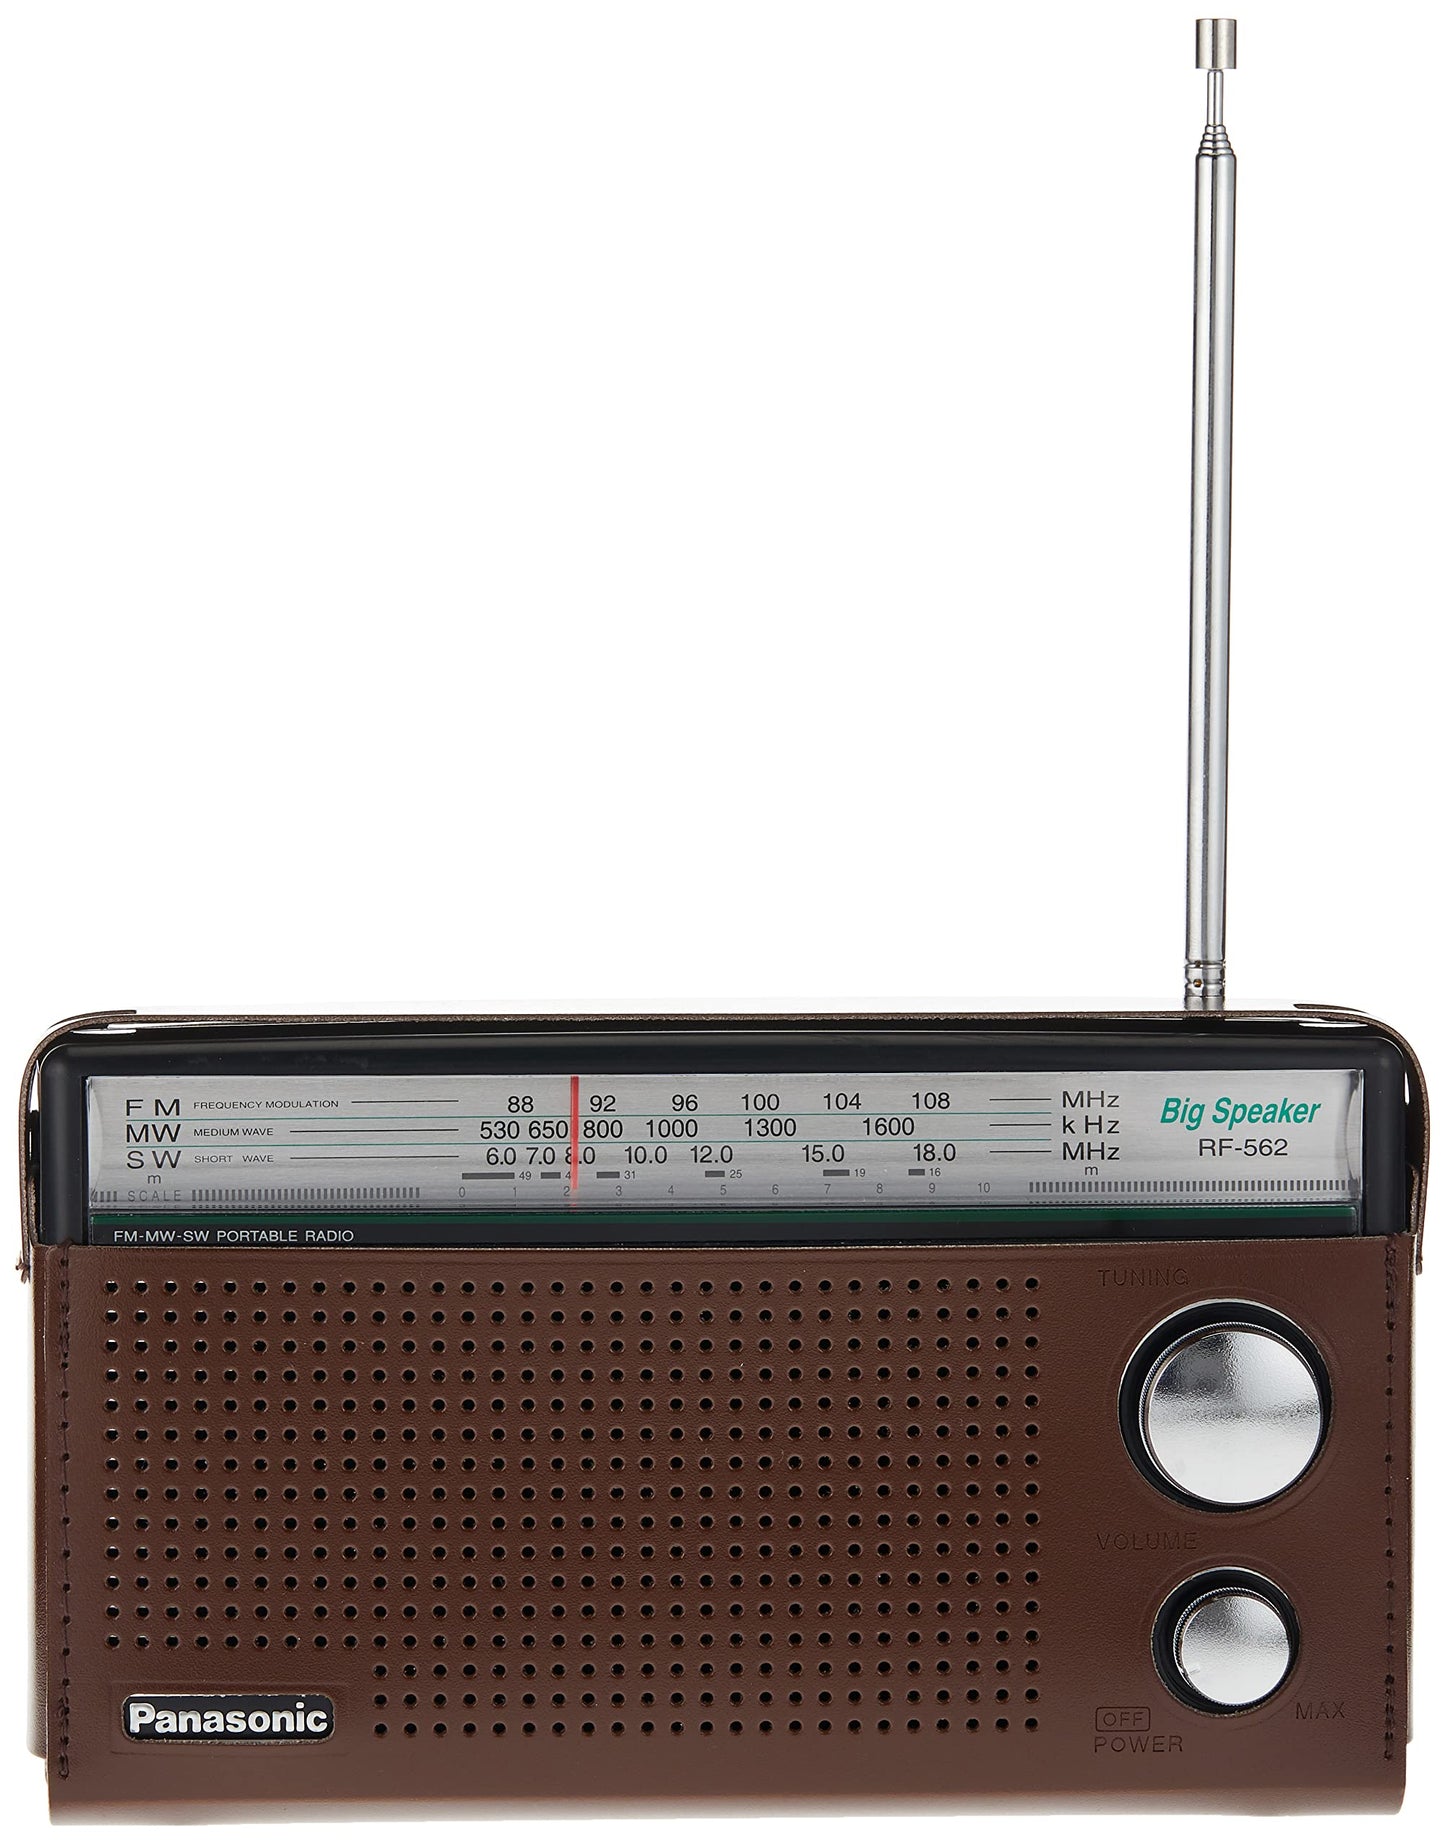 New 3-Band Reception Portable Radio DD FM Radio FM/MW/SW